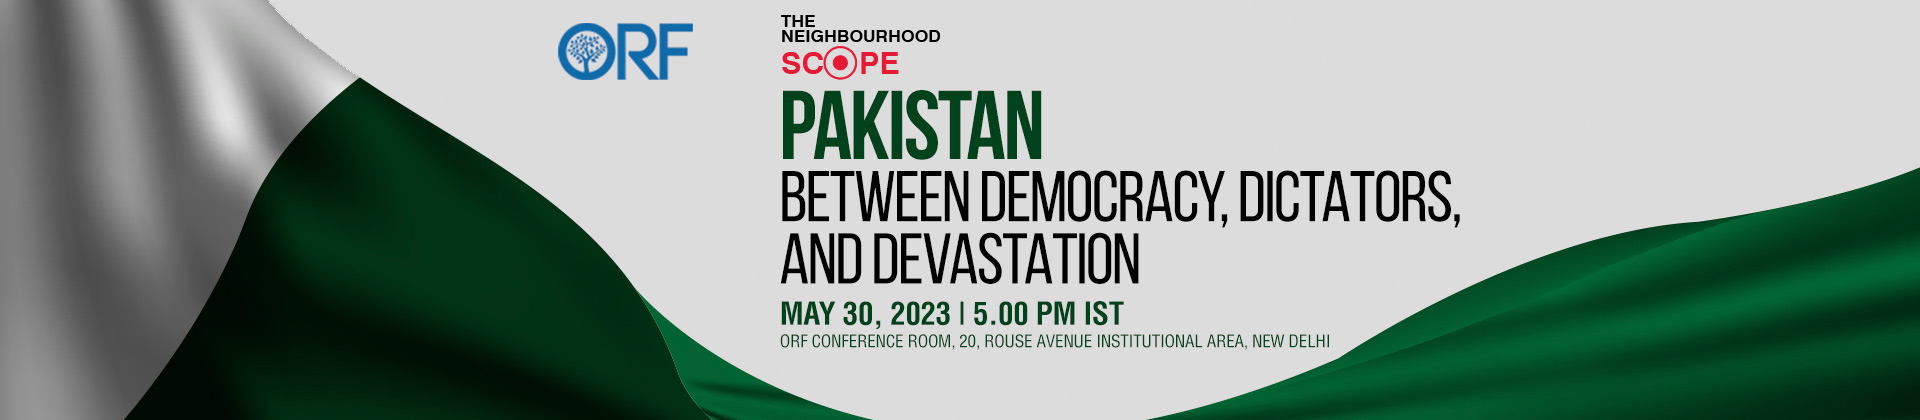 The Neighbourhood Scope | Pakistan: Between Democracy, Dictators, and Devastation